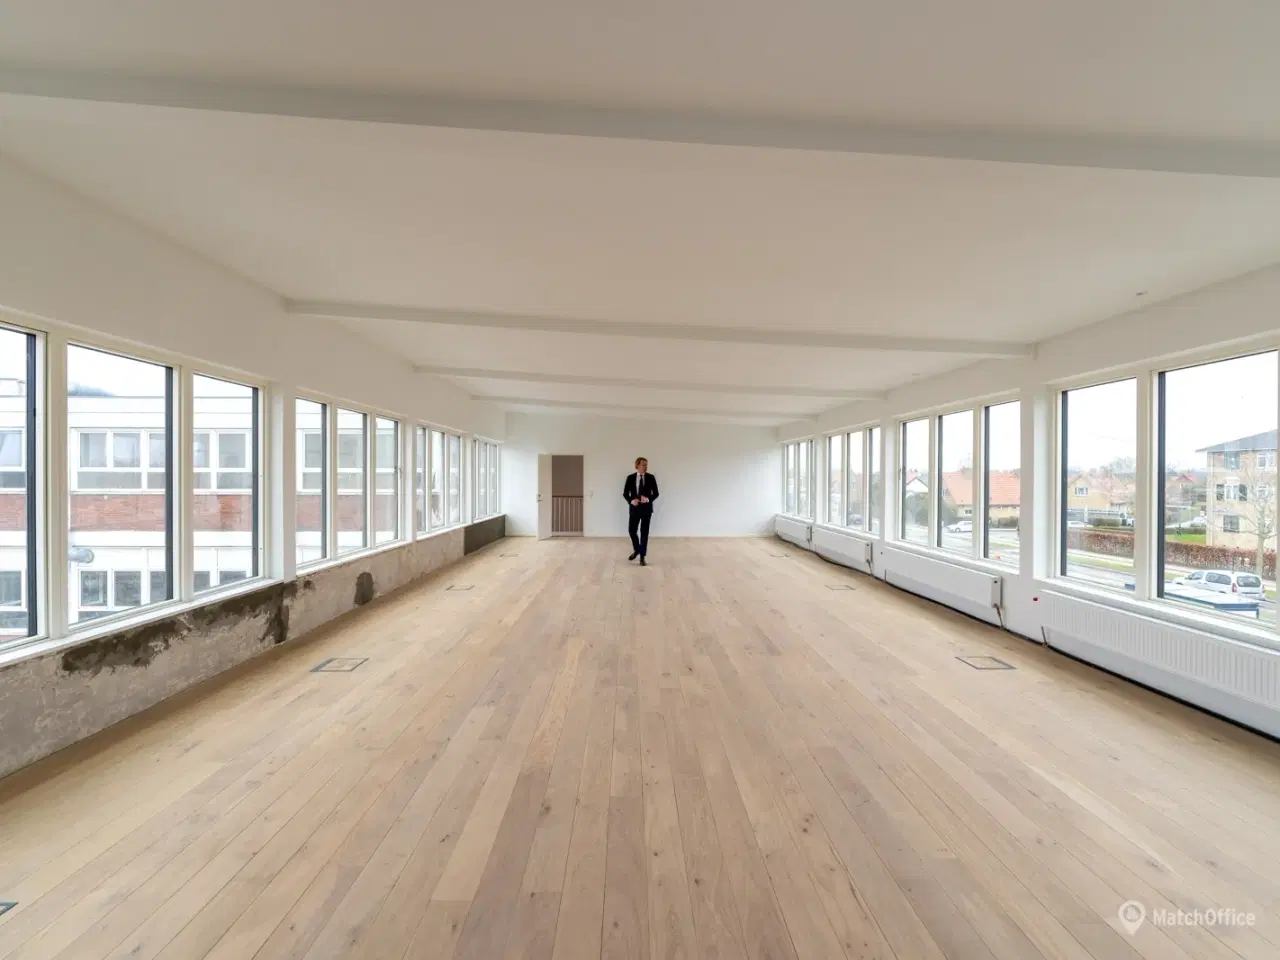 Billede 4 - Moderne. luksuriøst og lyst kontor med åben planløsning i Valby